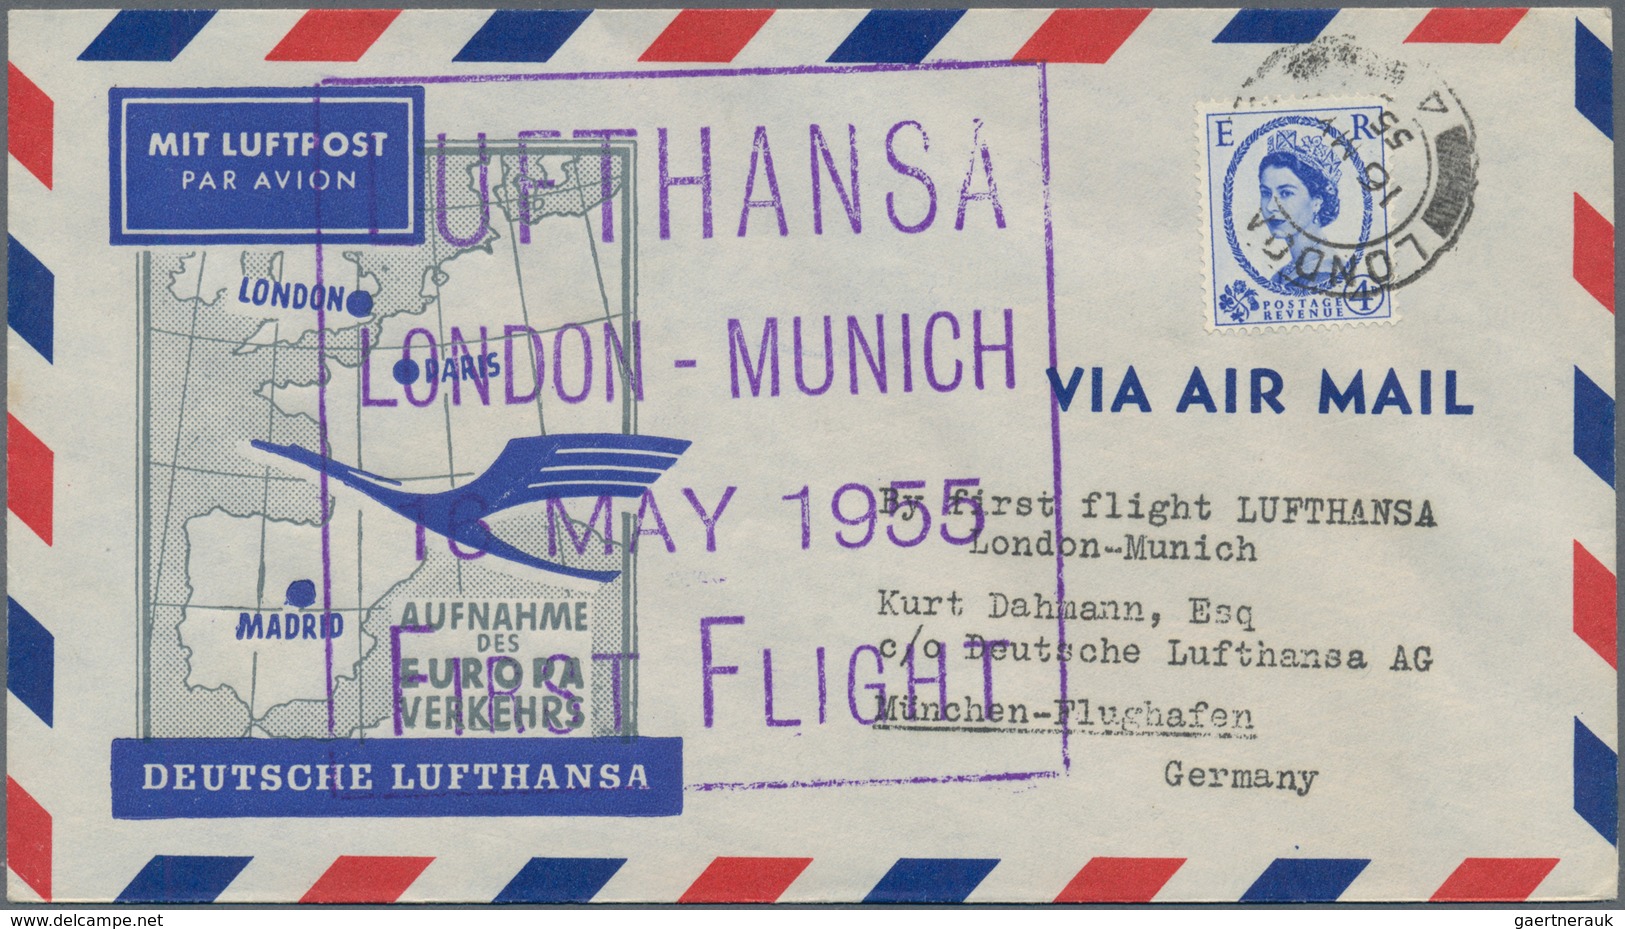 Flugpost Deutschland: 1955/1963, Lufthansa-Erstflüge, Sammlung von ca. 310 augenscheinlich nur versc